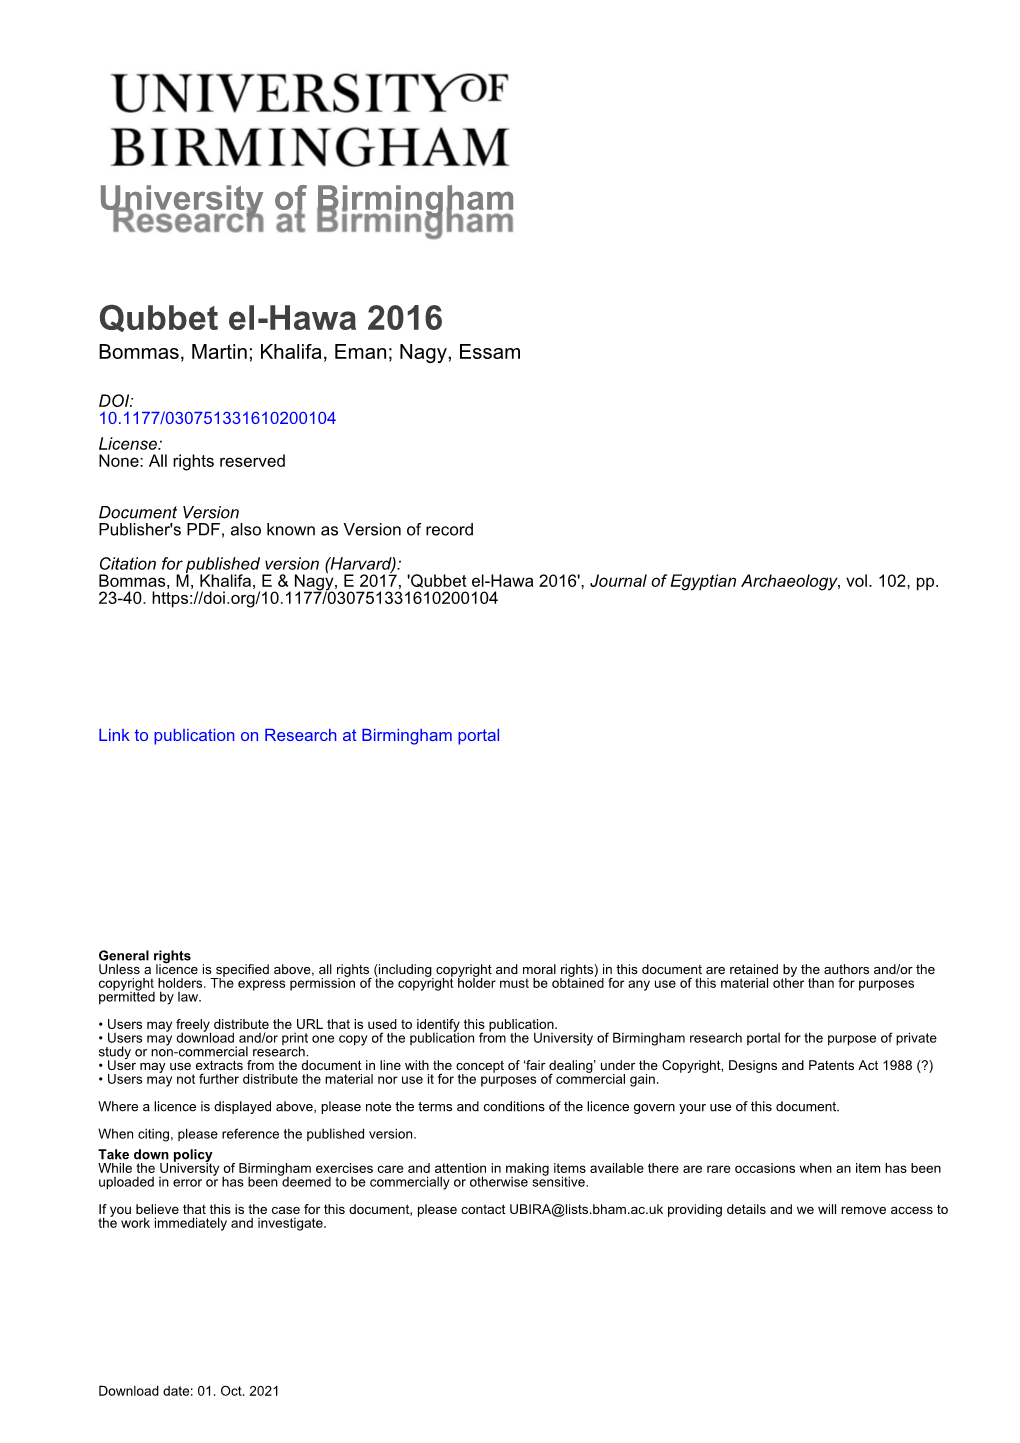 University of Birmingham Qubbet El-Hawa 2016